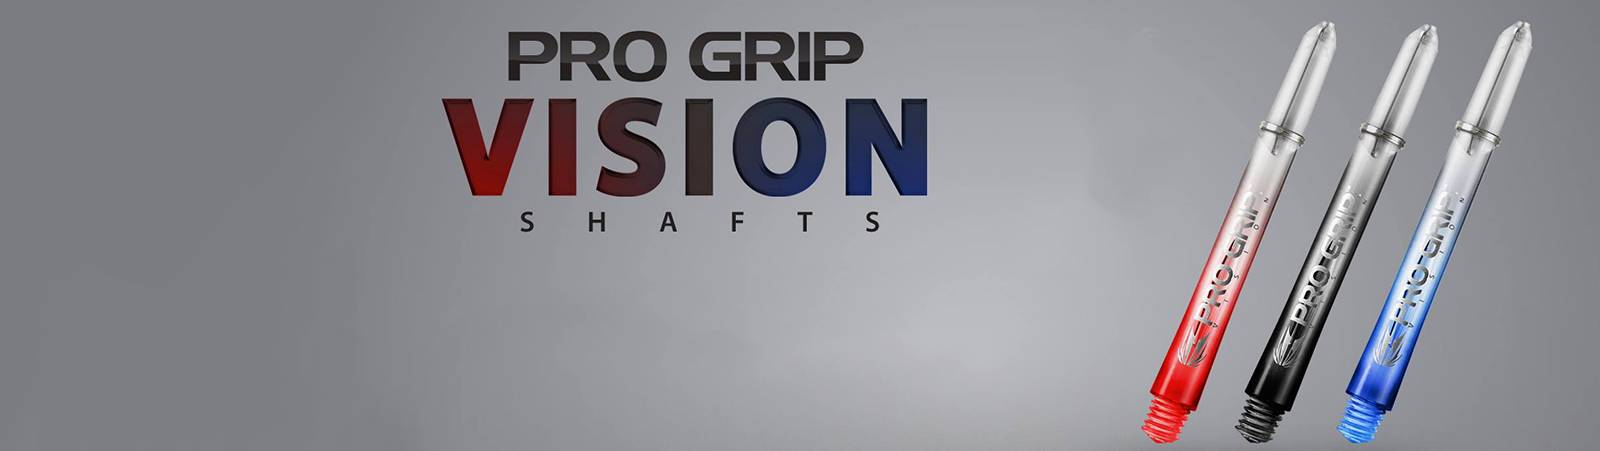 target-pro-grip-vision-shaftsps50kqjbivuef